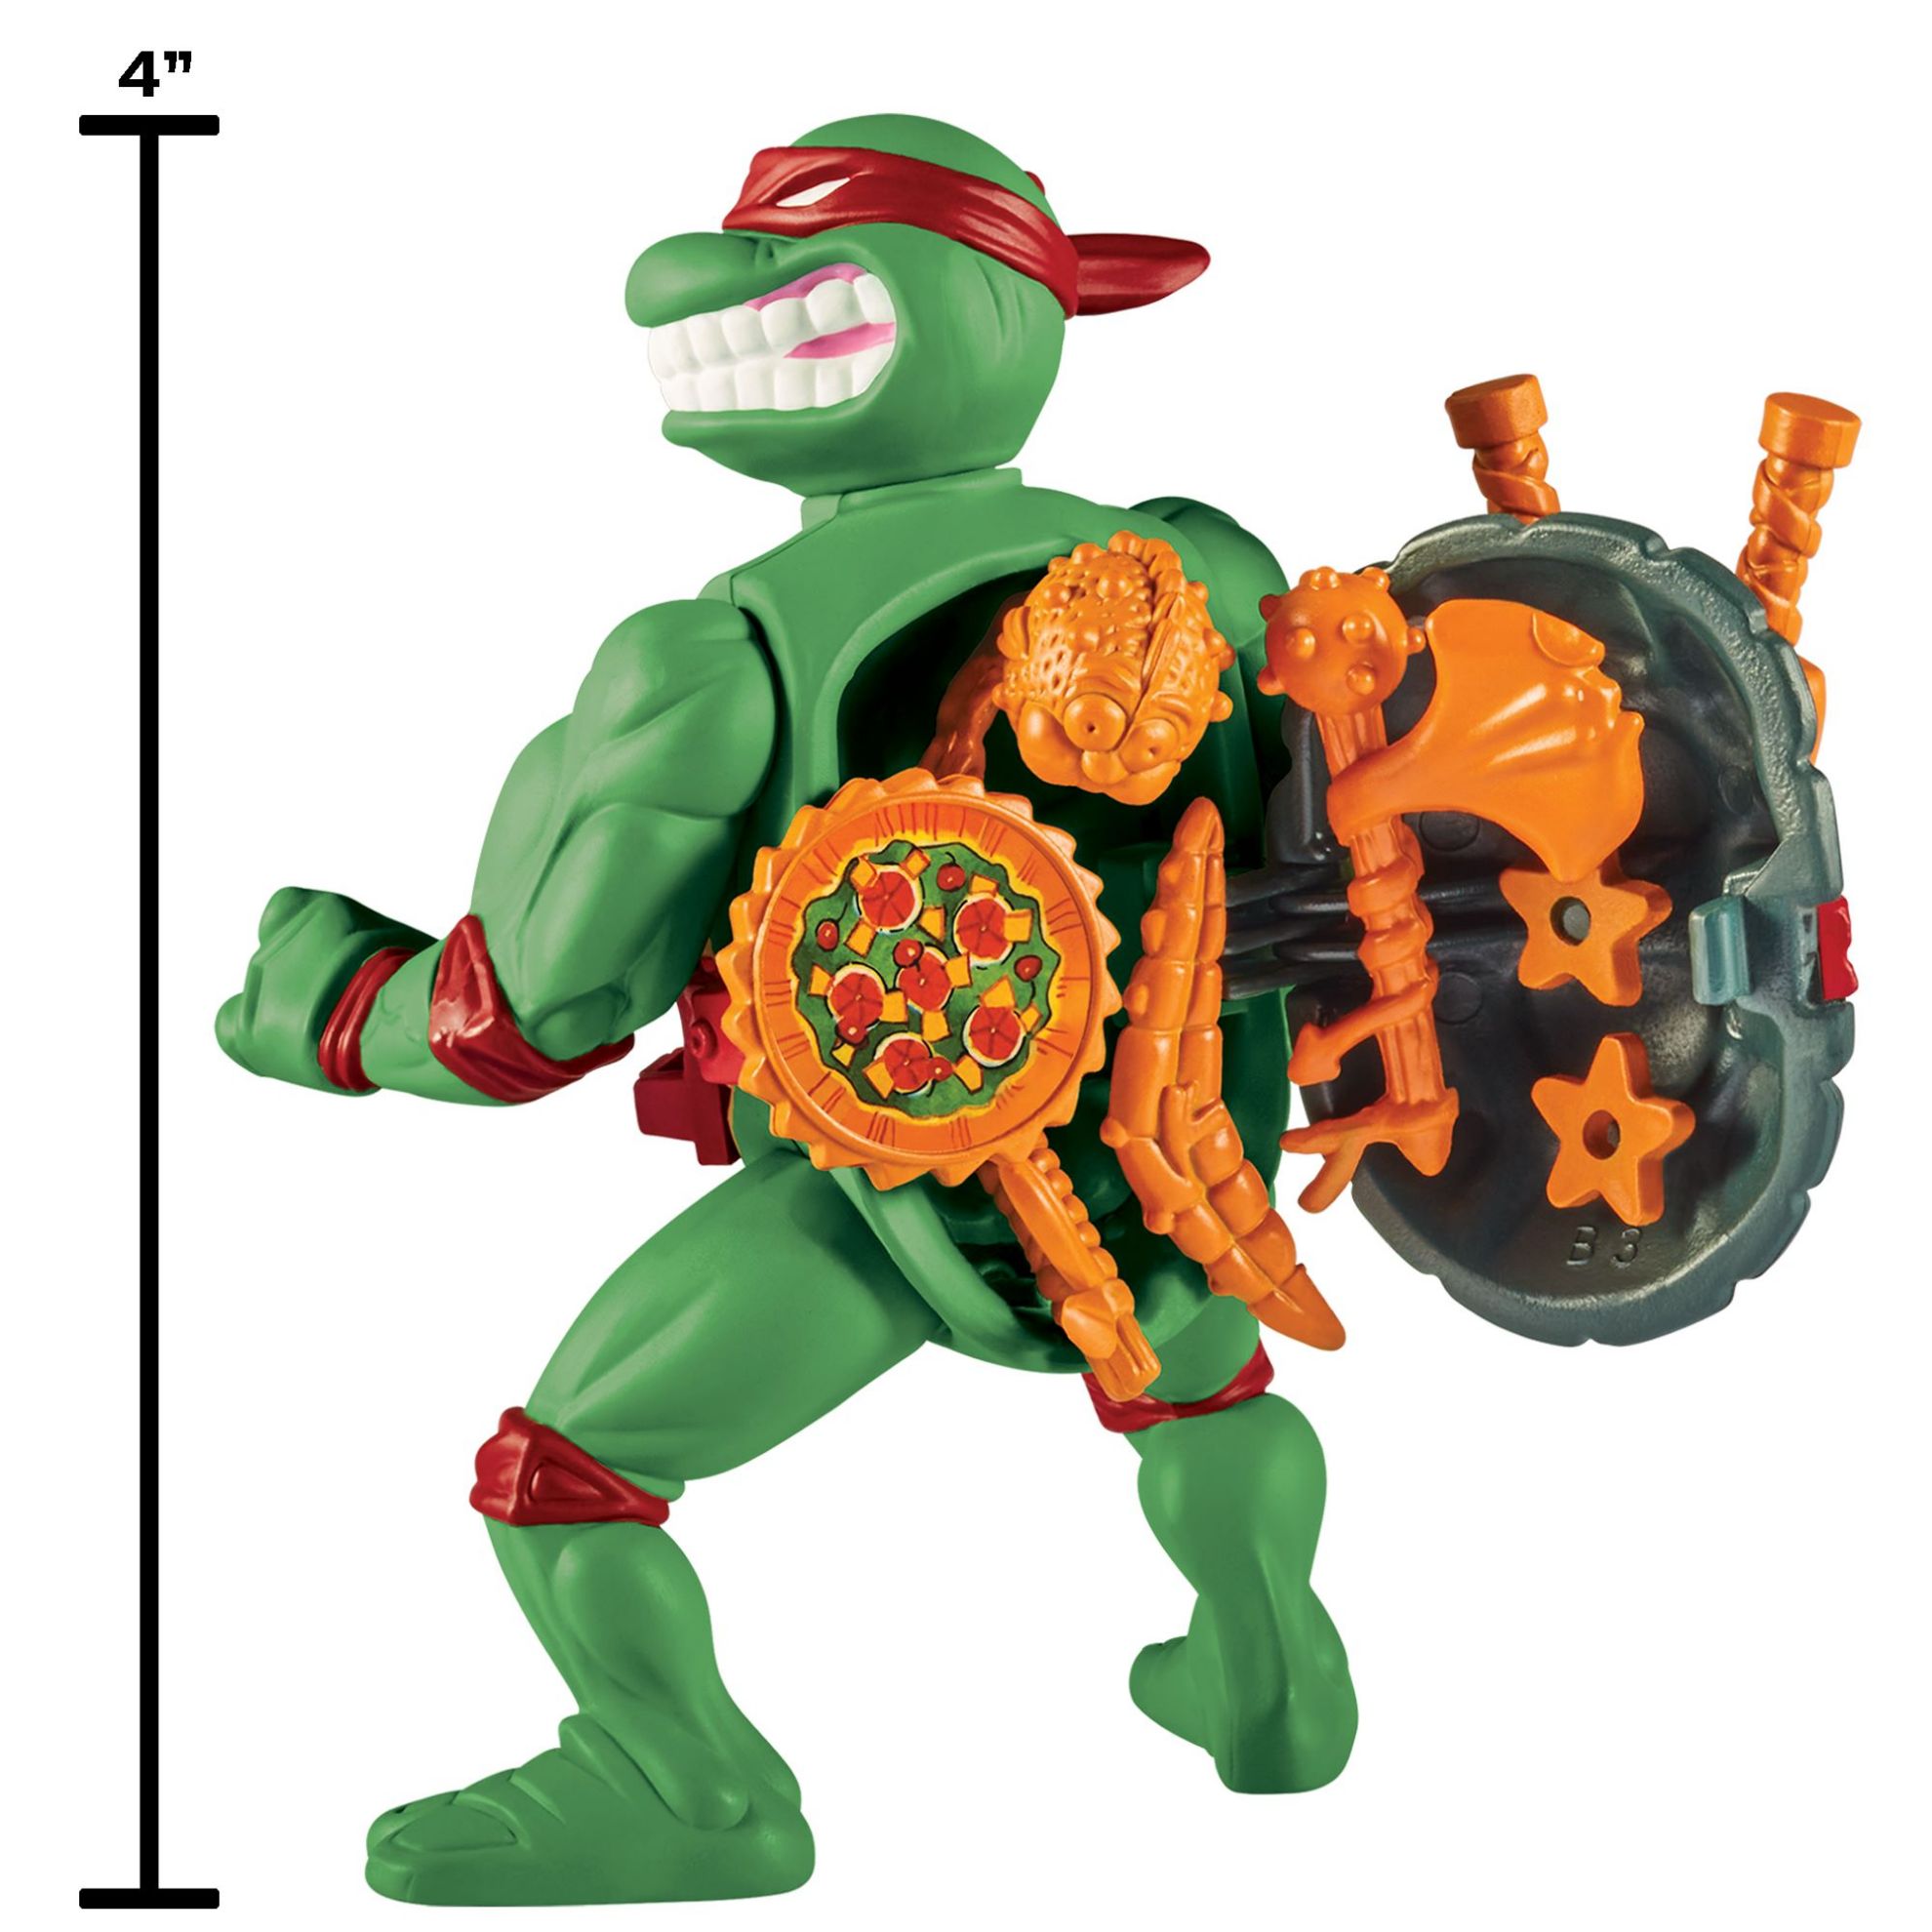 Teenage Mutant Ninja Turtles - Raphael with Storage Shell